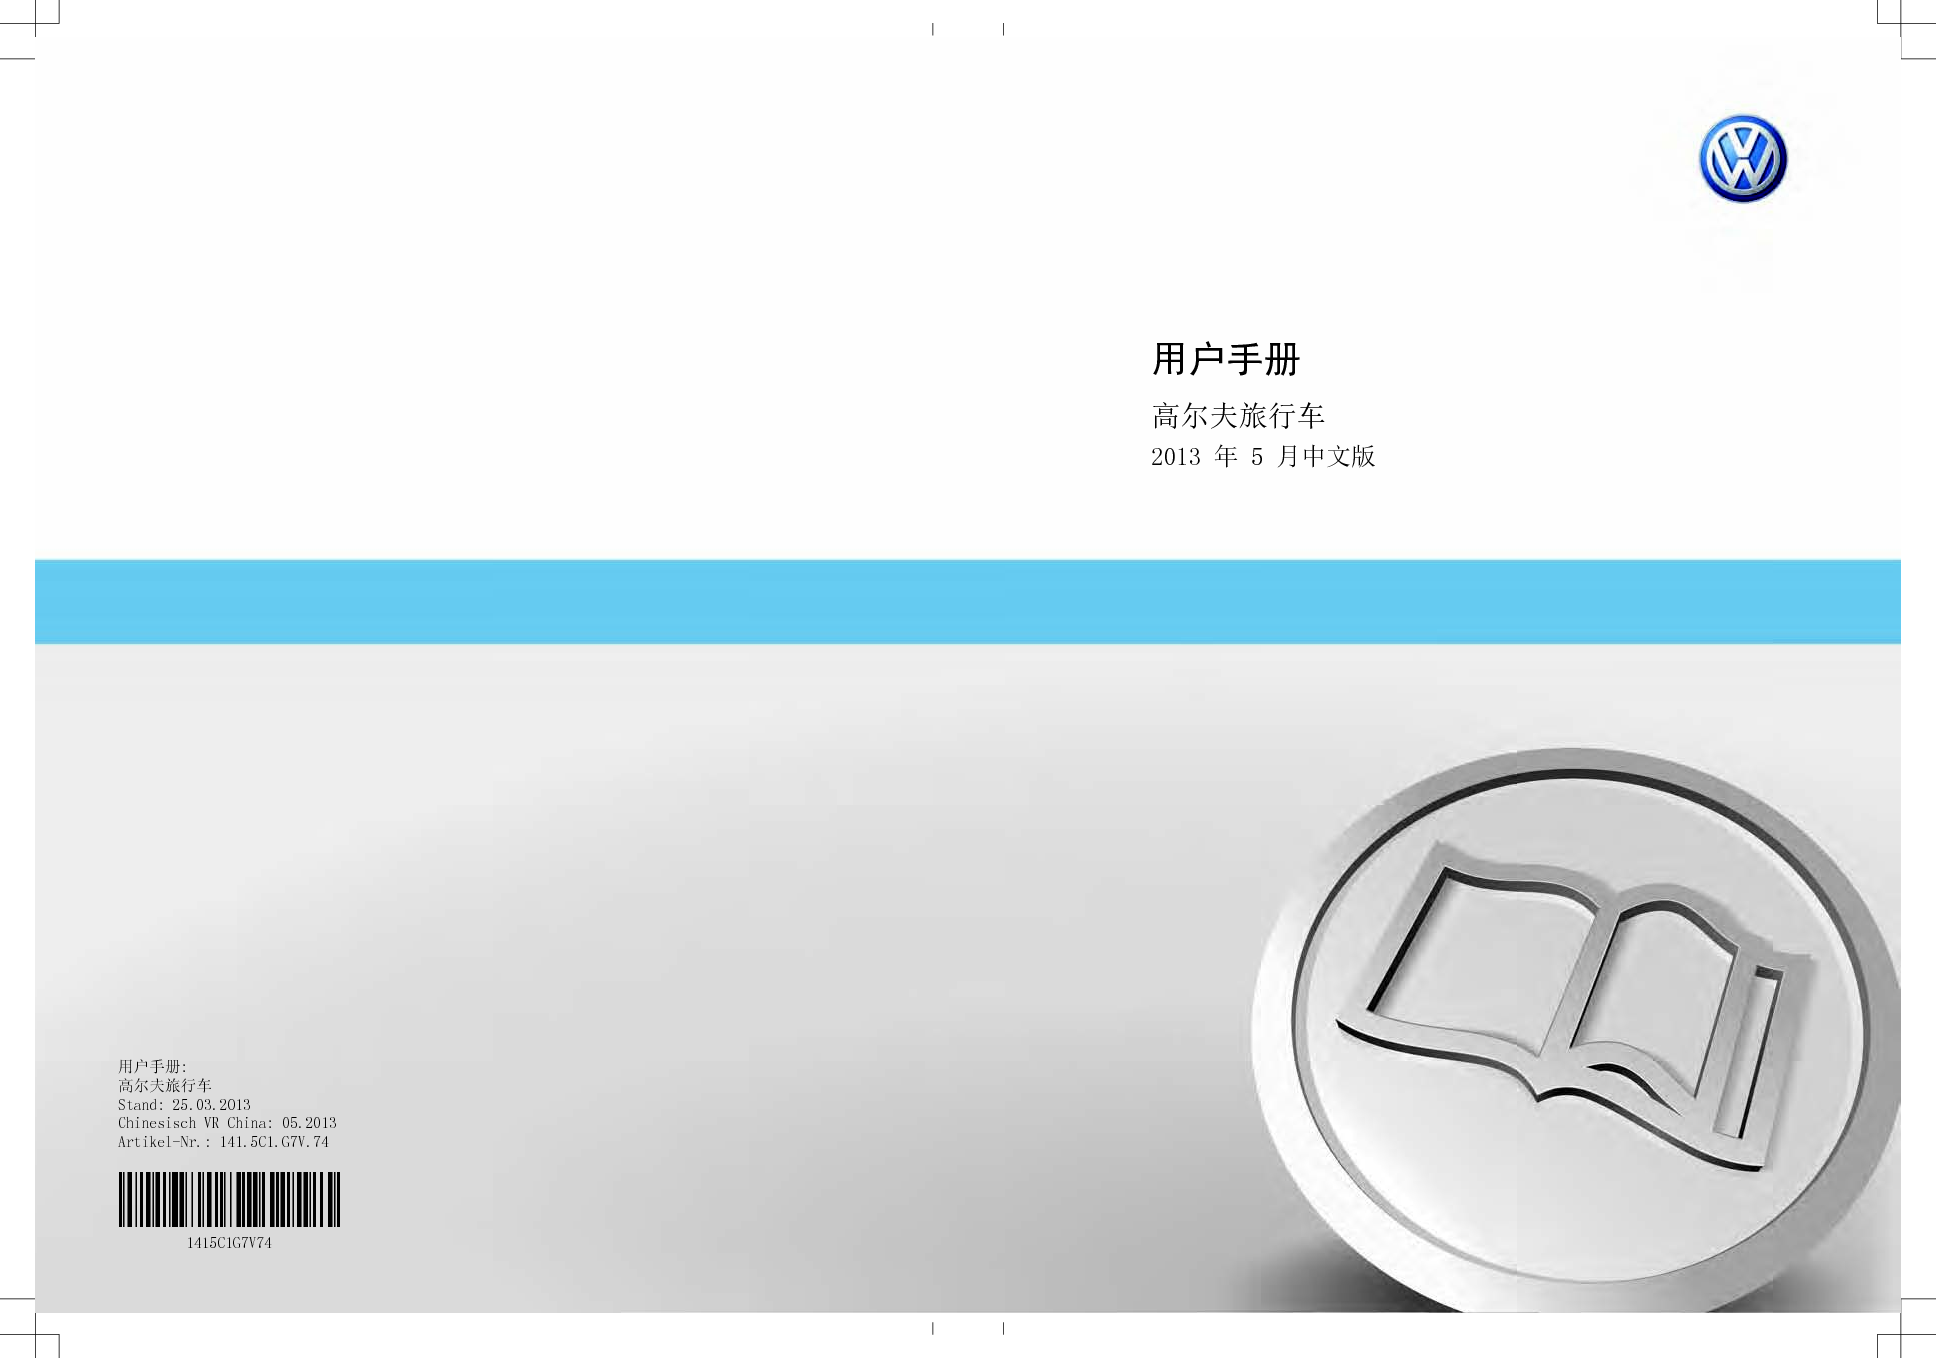 大众 Volkswagen GOLF 高尔夫旅行车 2013 用户手册 封面